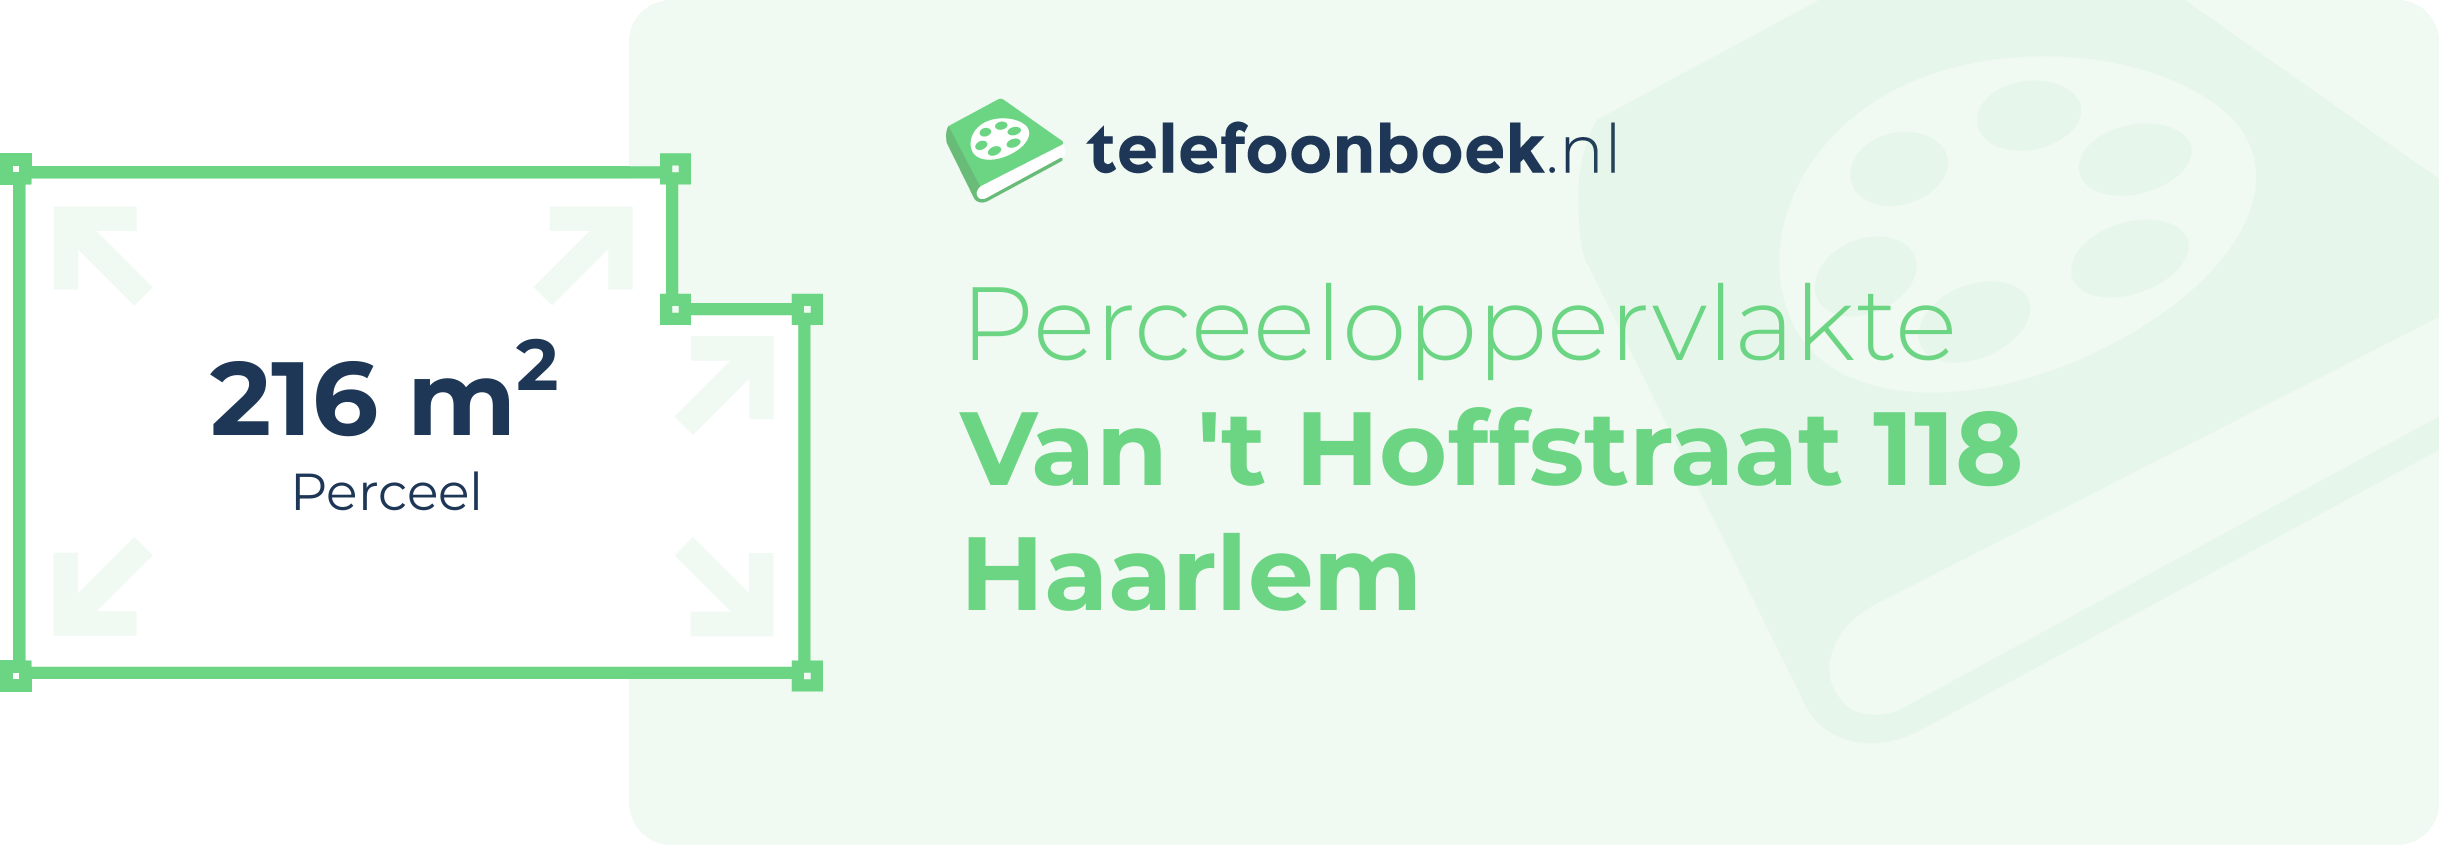 Perceeloppervlakte Van 't Hoffstraat 118 Haarlem